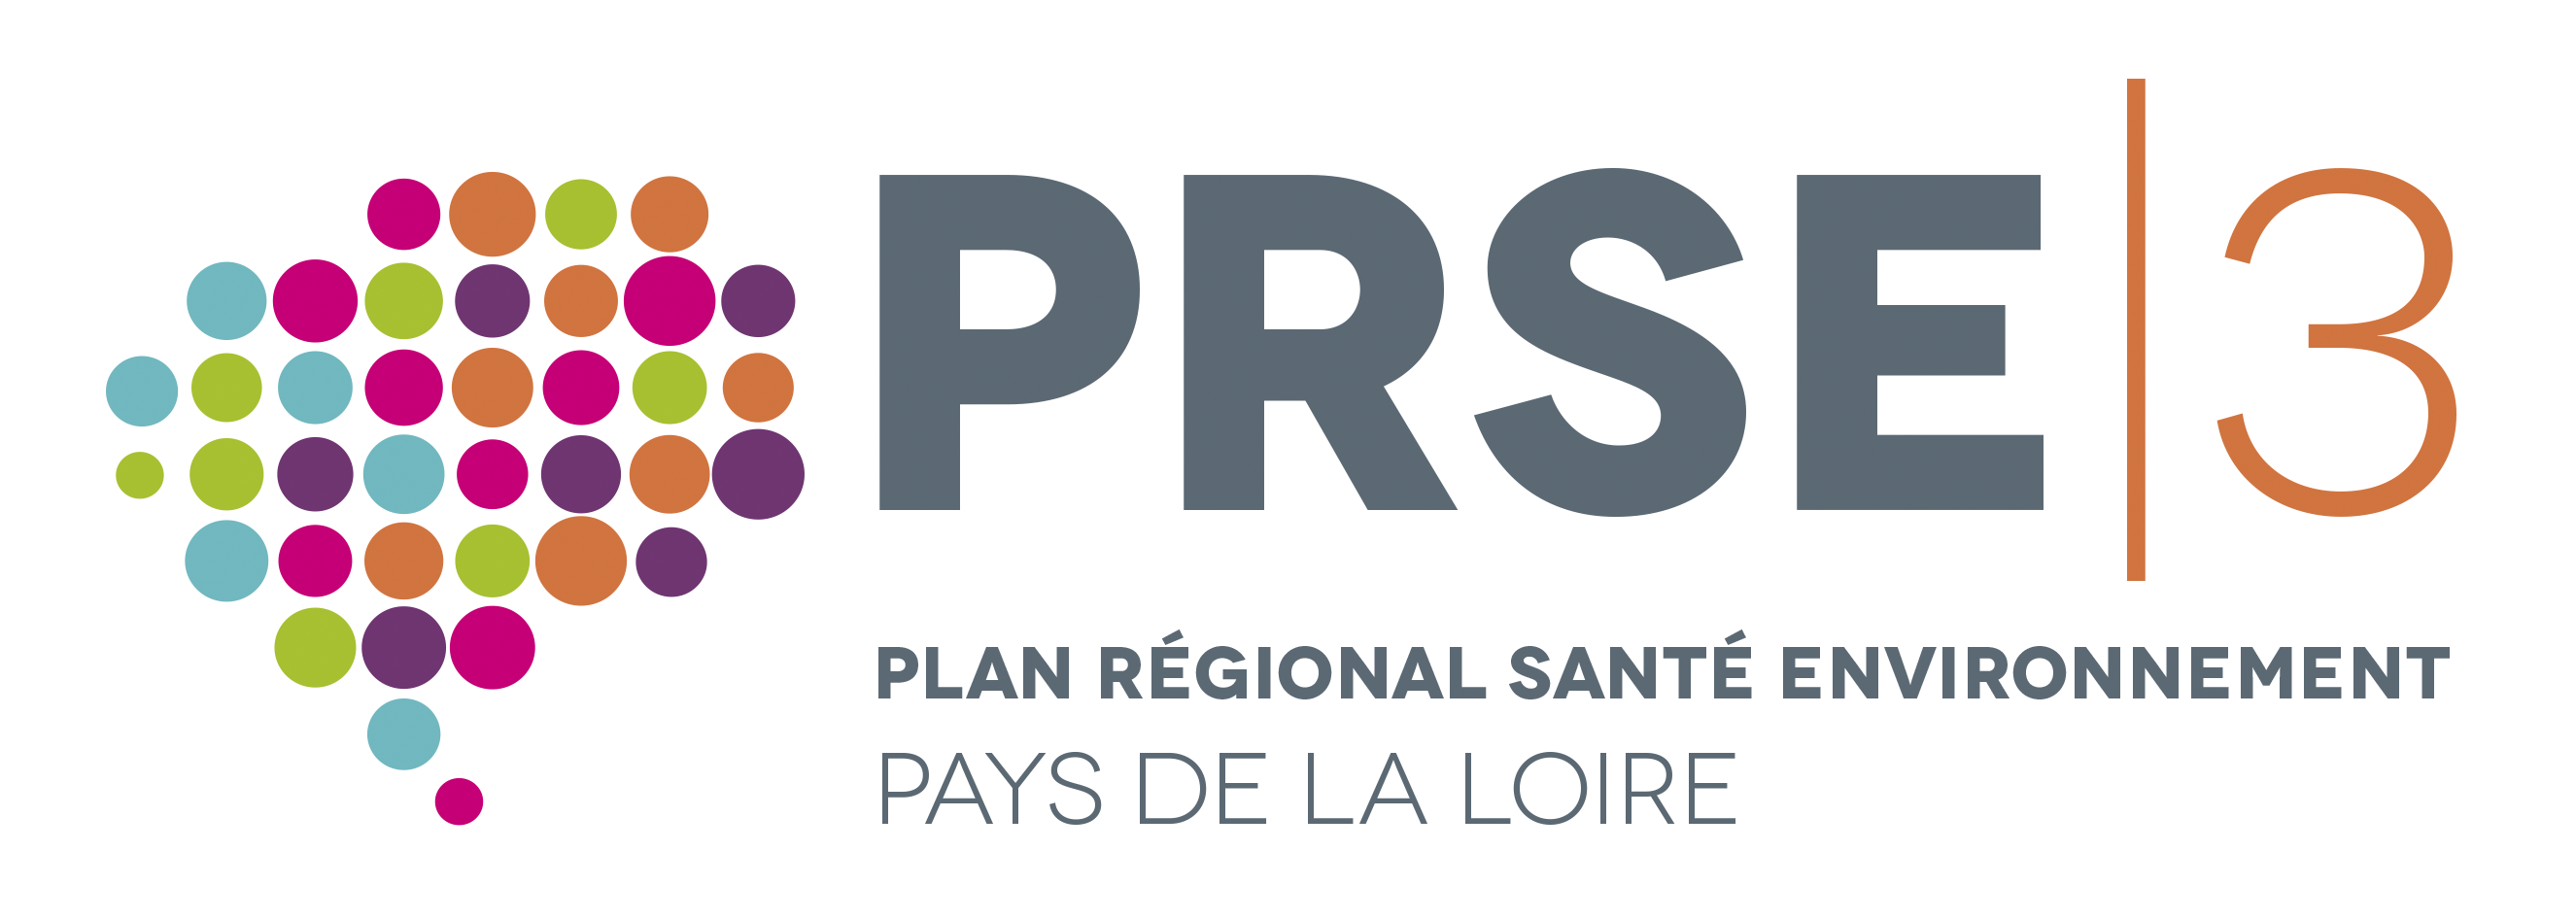 PRSE3 Pays de la Loire